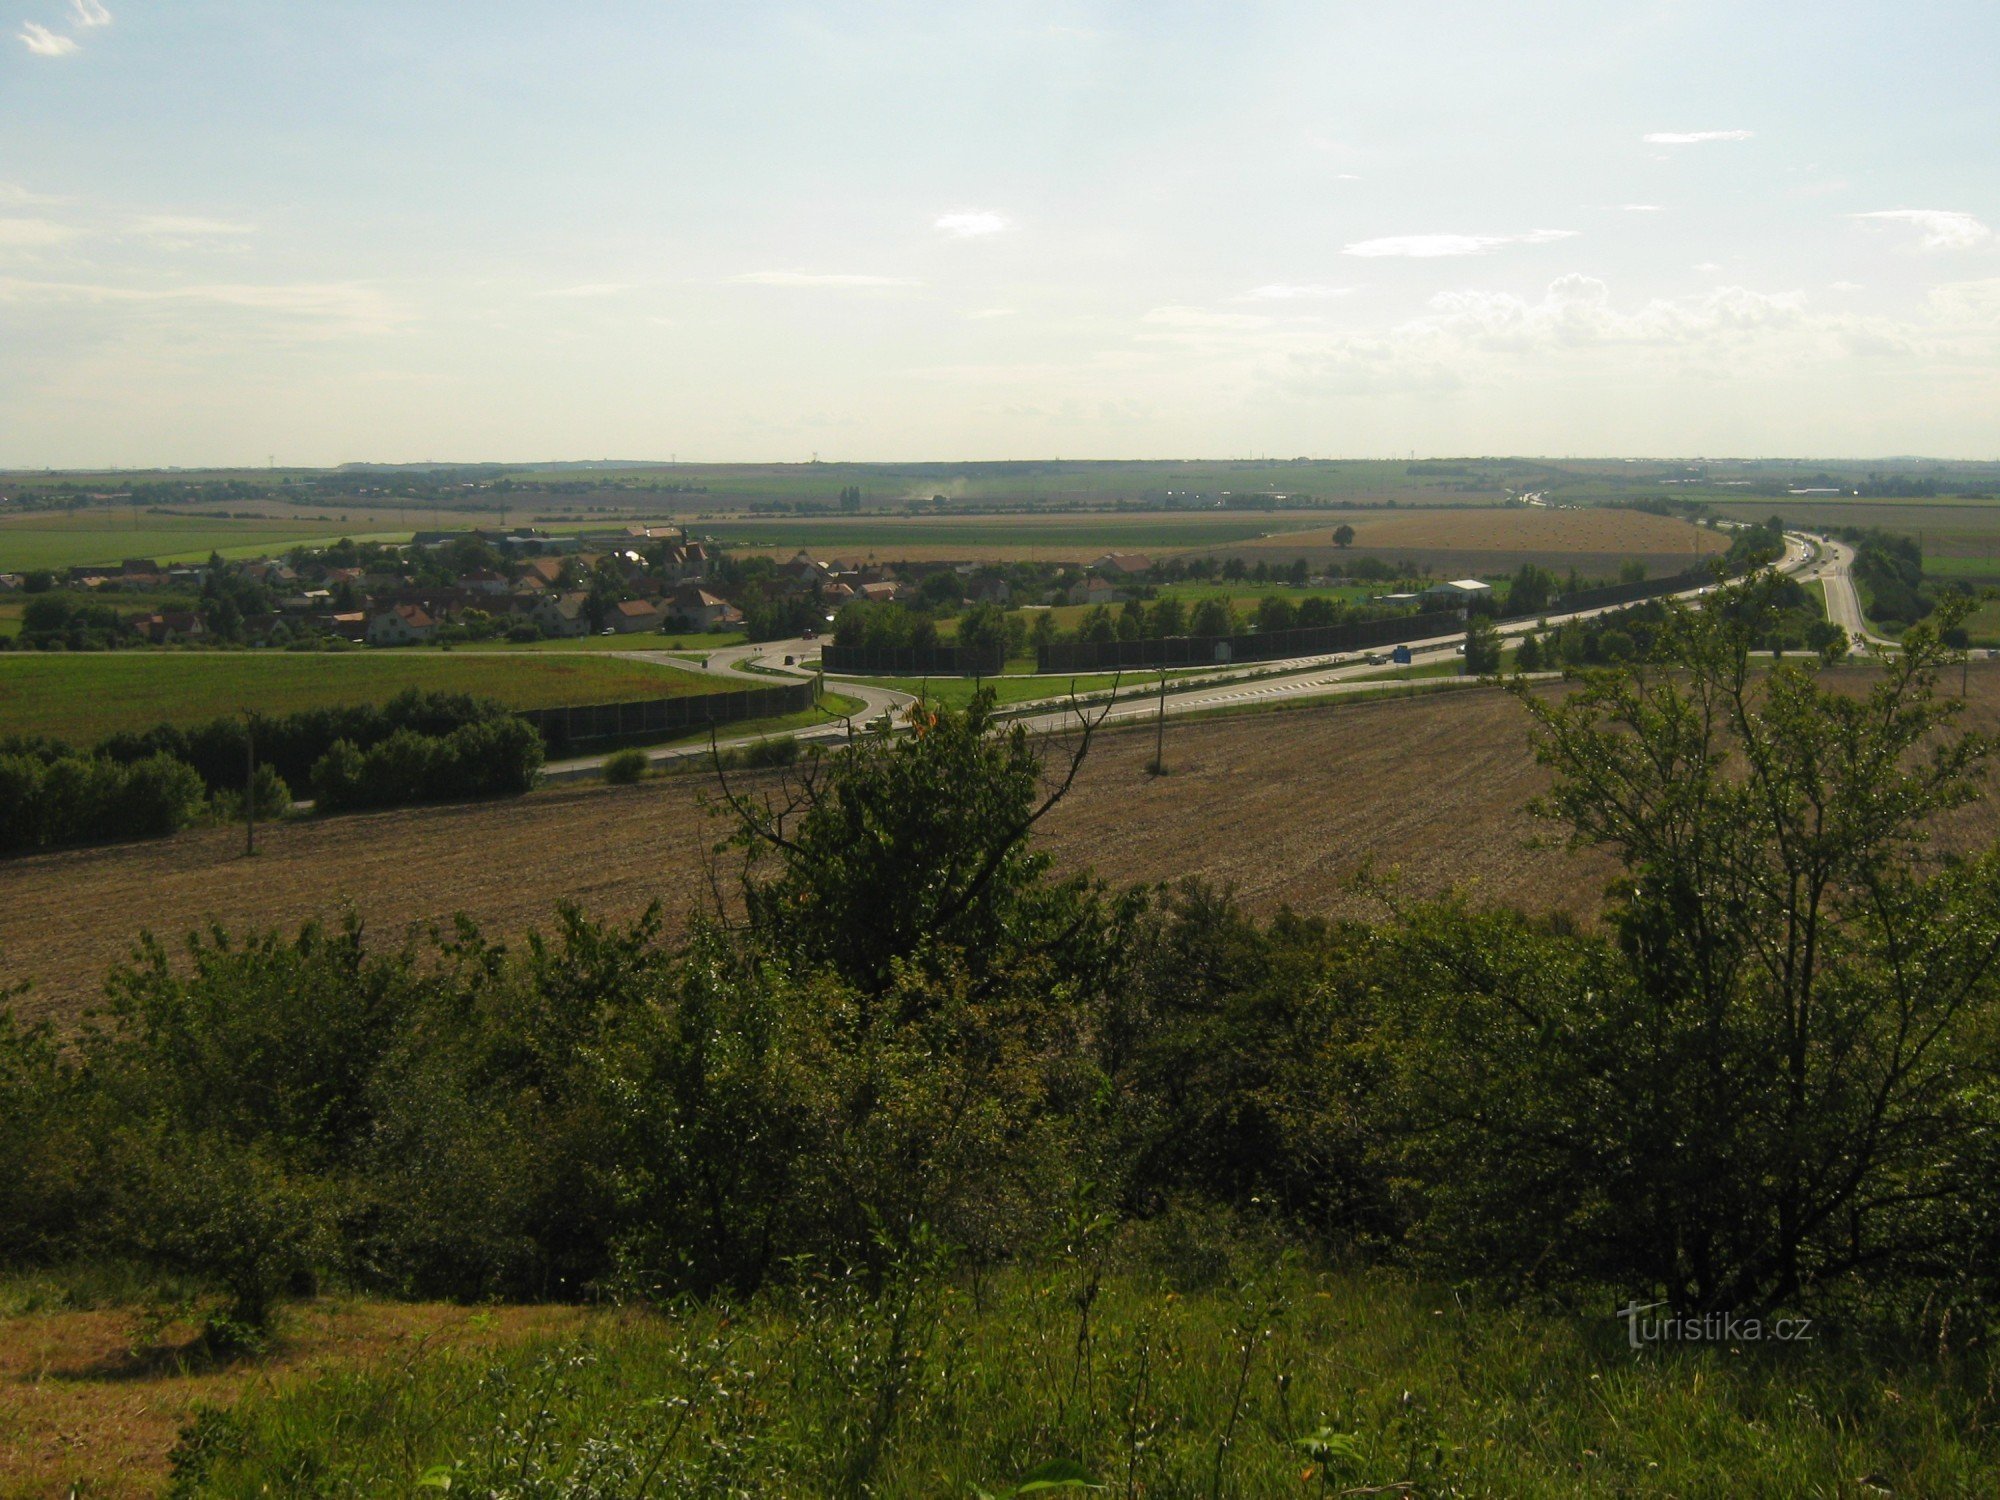 Vista de Českobrodsko, no primeiro plano da rodovia com a saída Bříství